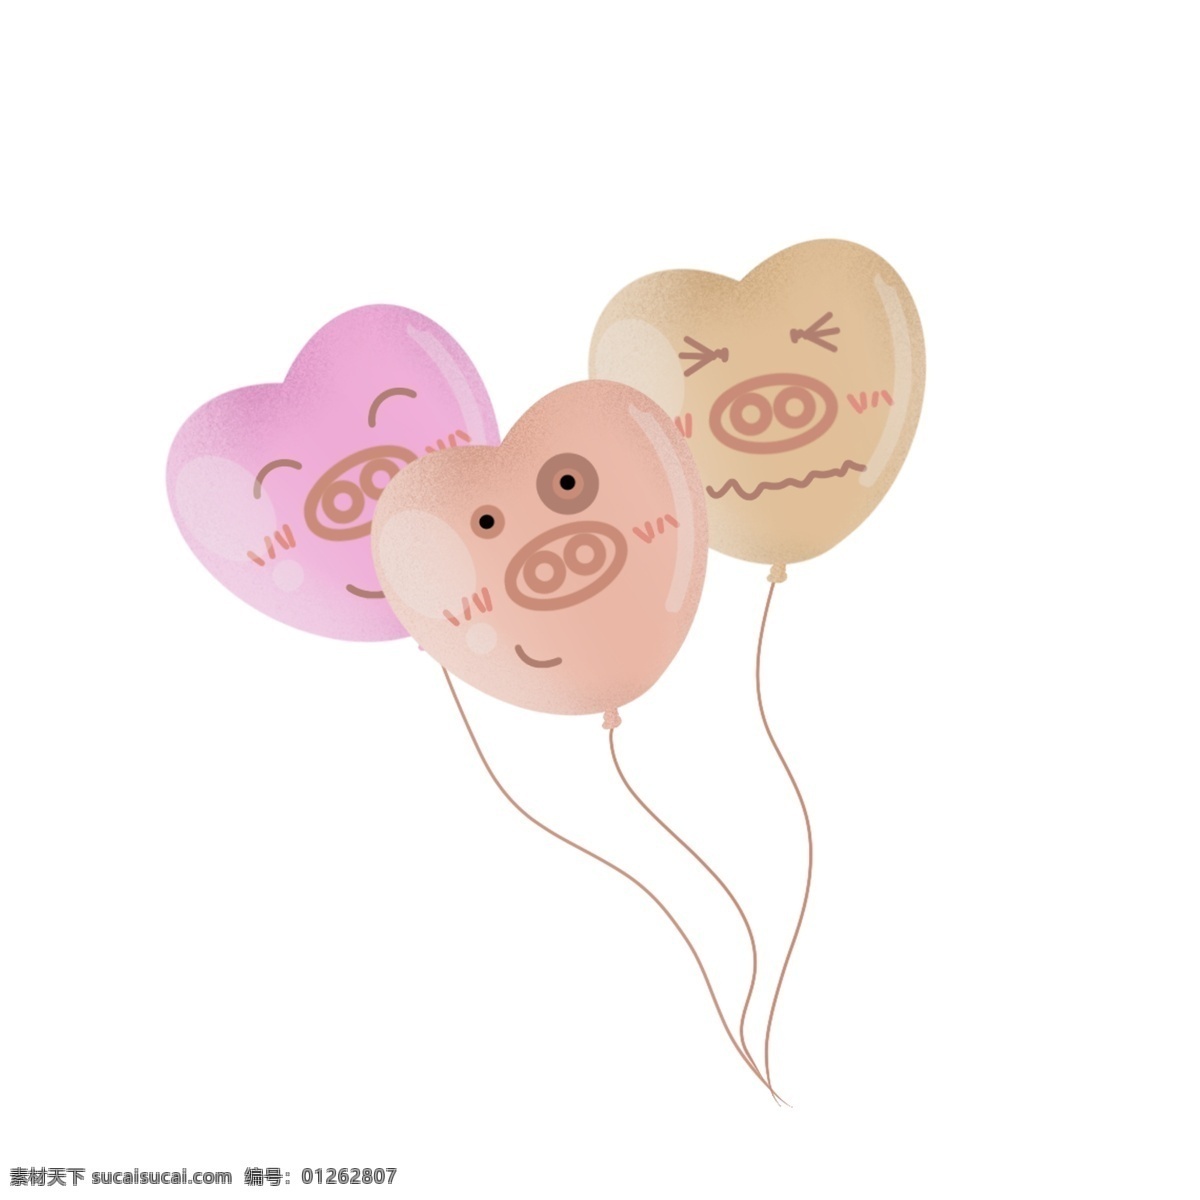 可爱 手绘 心形 猪 气球 猪猪 笑脸 表情 丰富表情 粉色 棕色 爱心